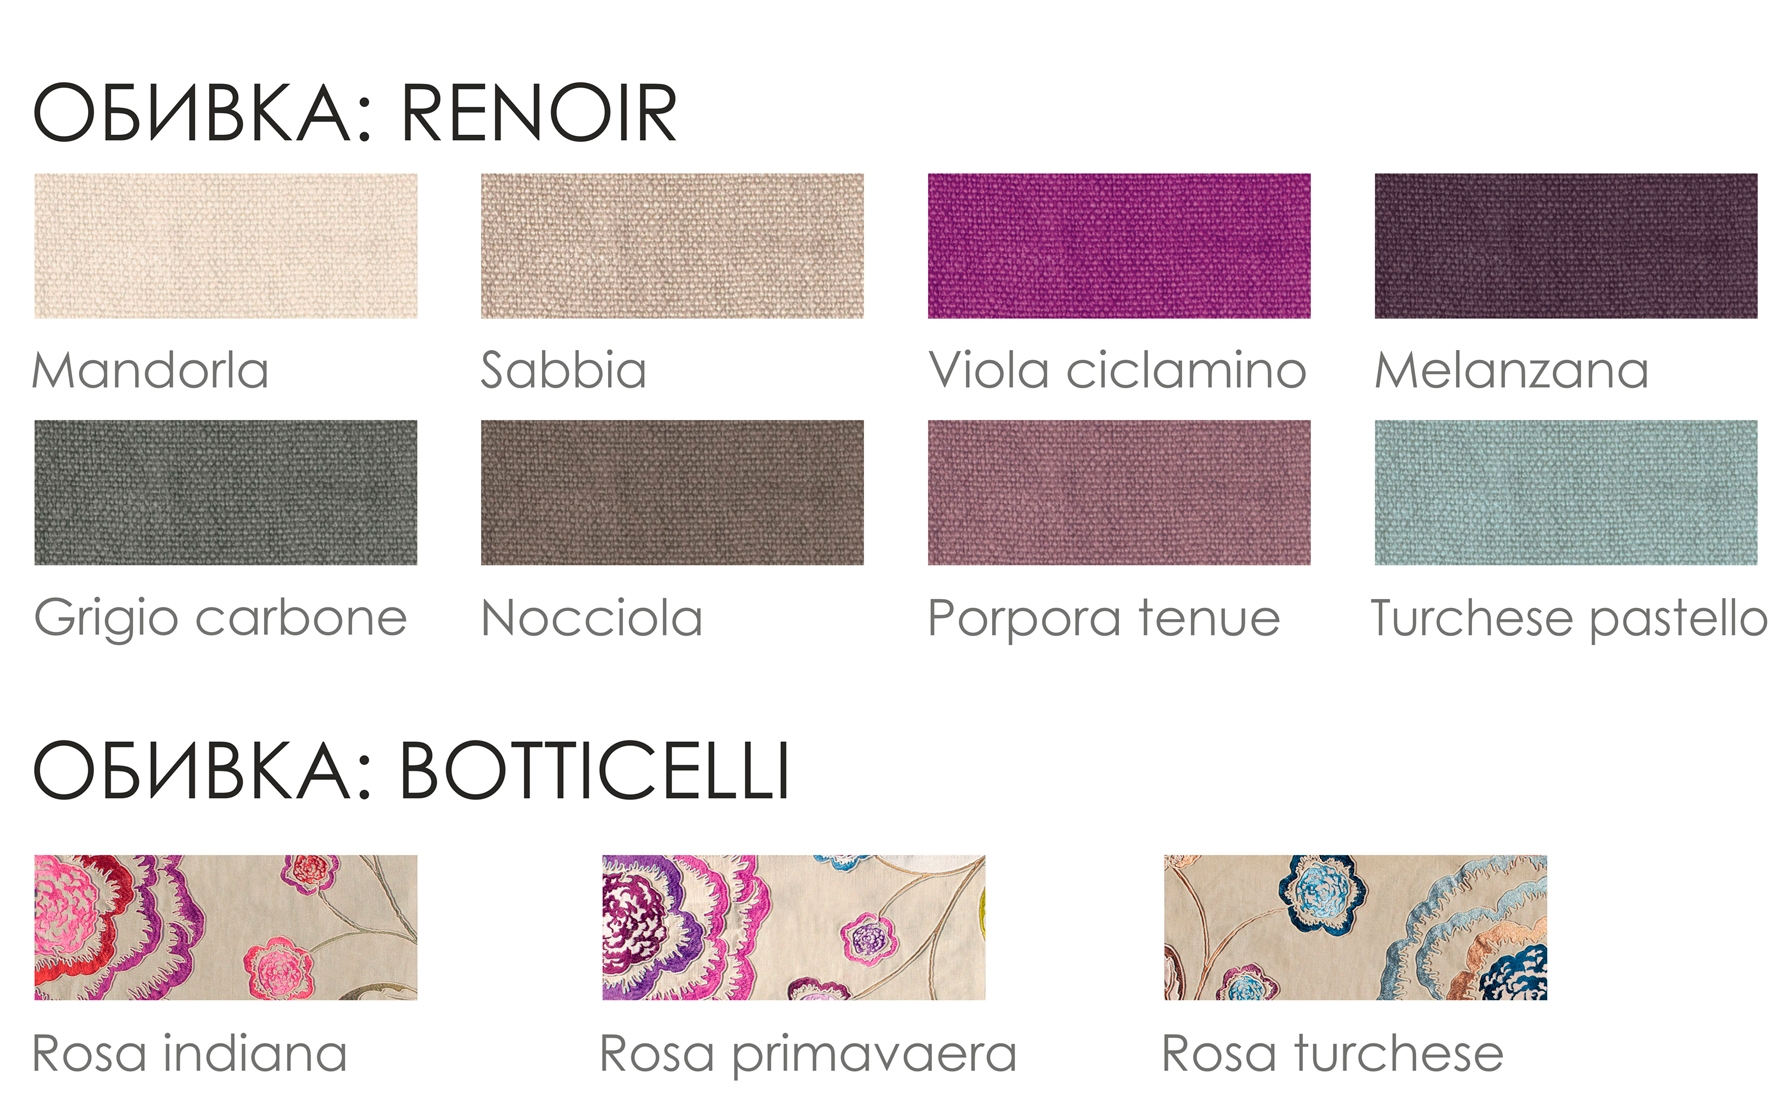 Botticelli/Raffaello